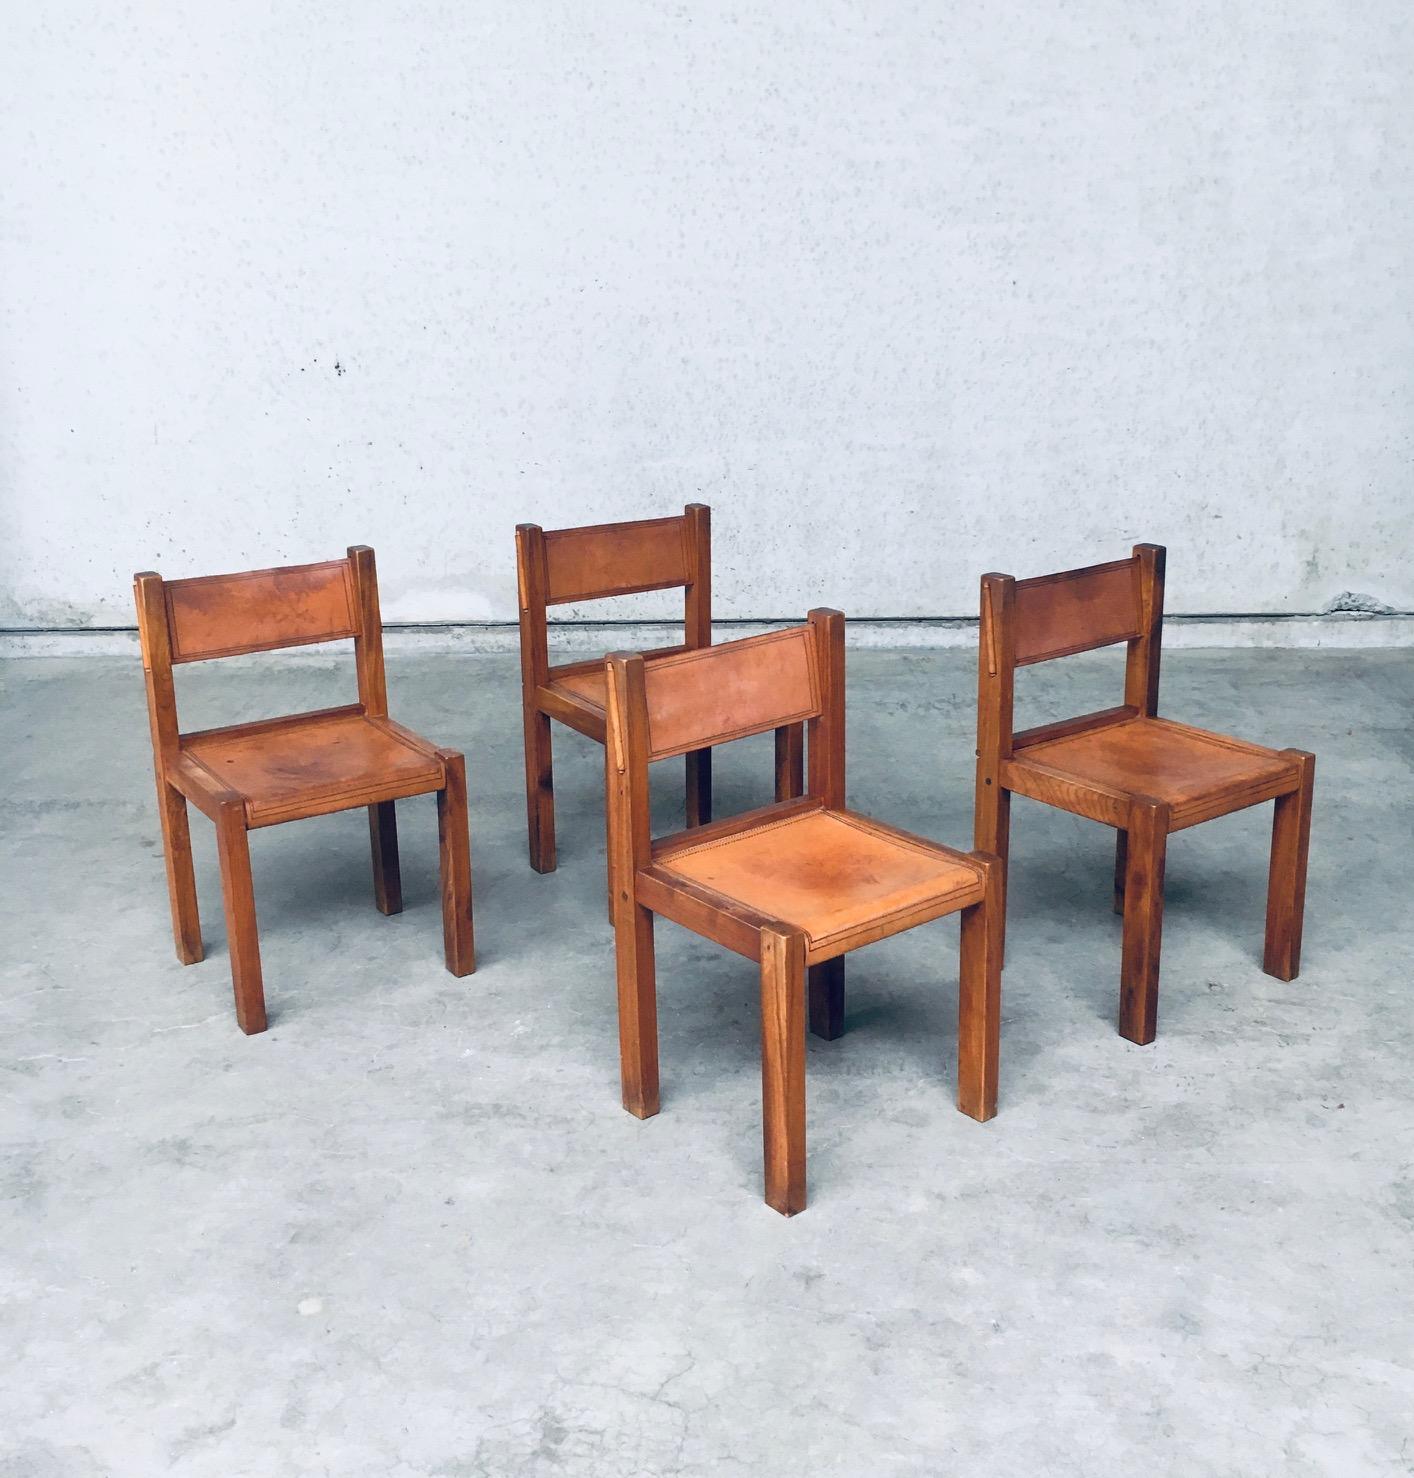 Vintage Midcentury Italian Design Elm & Cognac Leather Dining Room Chair set of 4. Designed in the style / manner of Pierre Chapo. Fabriqué en Italie, période des années 1960. Des chaises au design impressionnant avec de jolis détails sur la